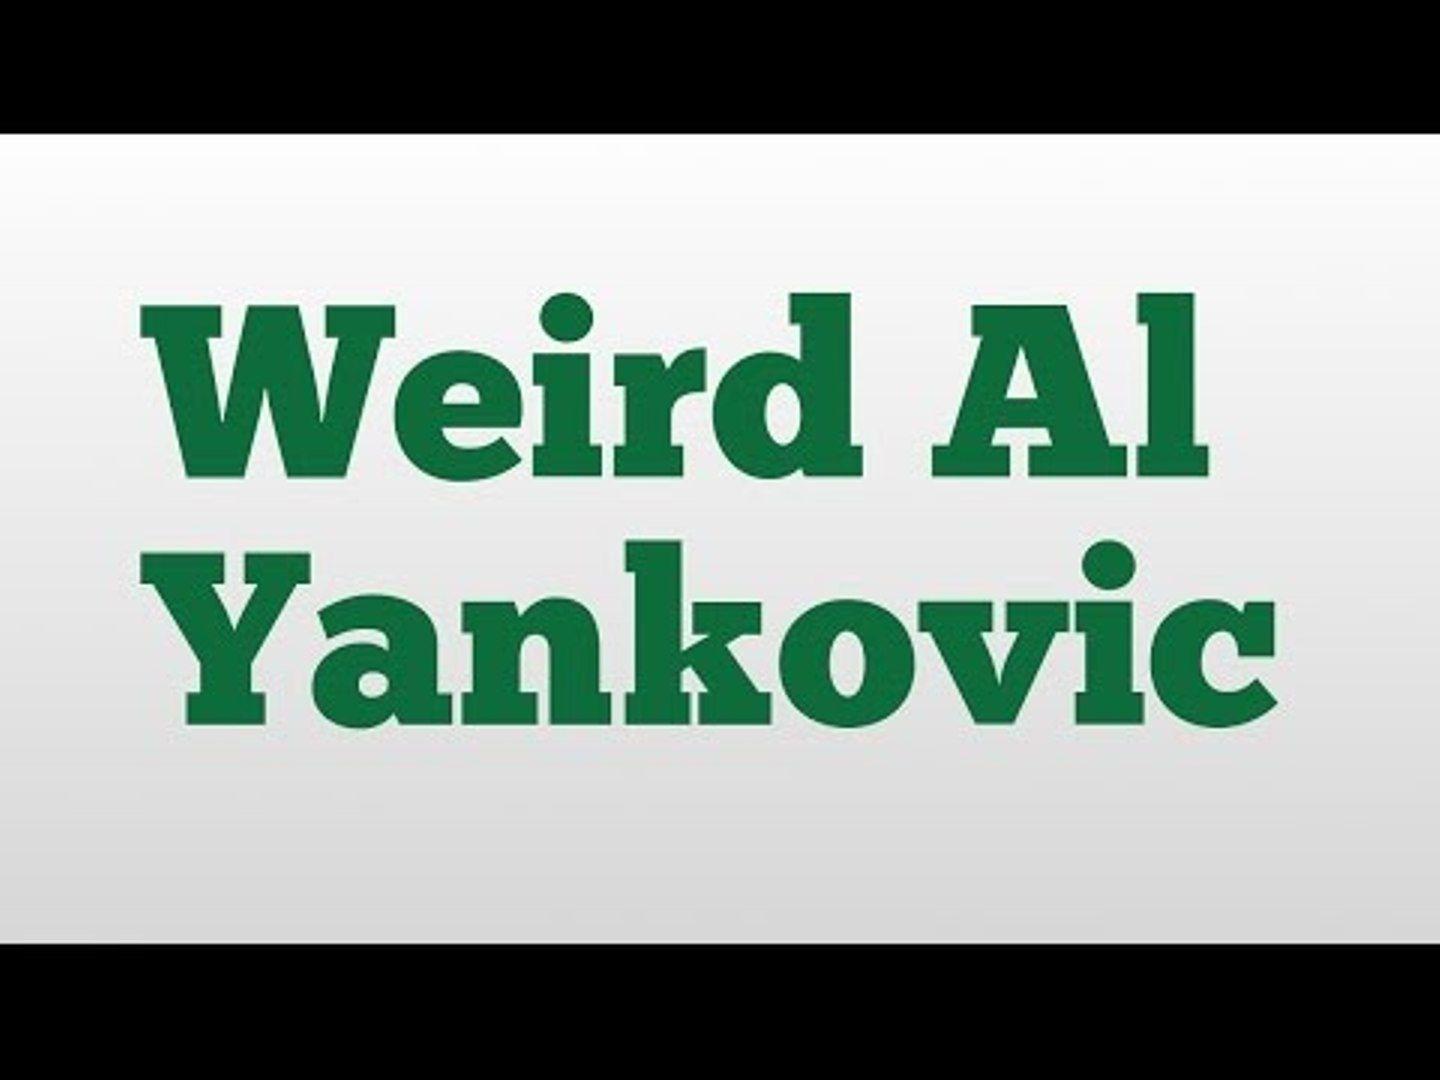 Weird Al Logo - Weird Al Yankovic meaning and pronunciation - video dailymotion